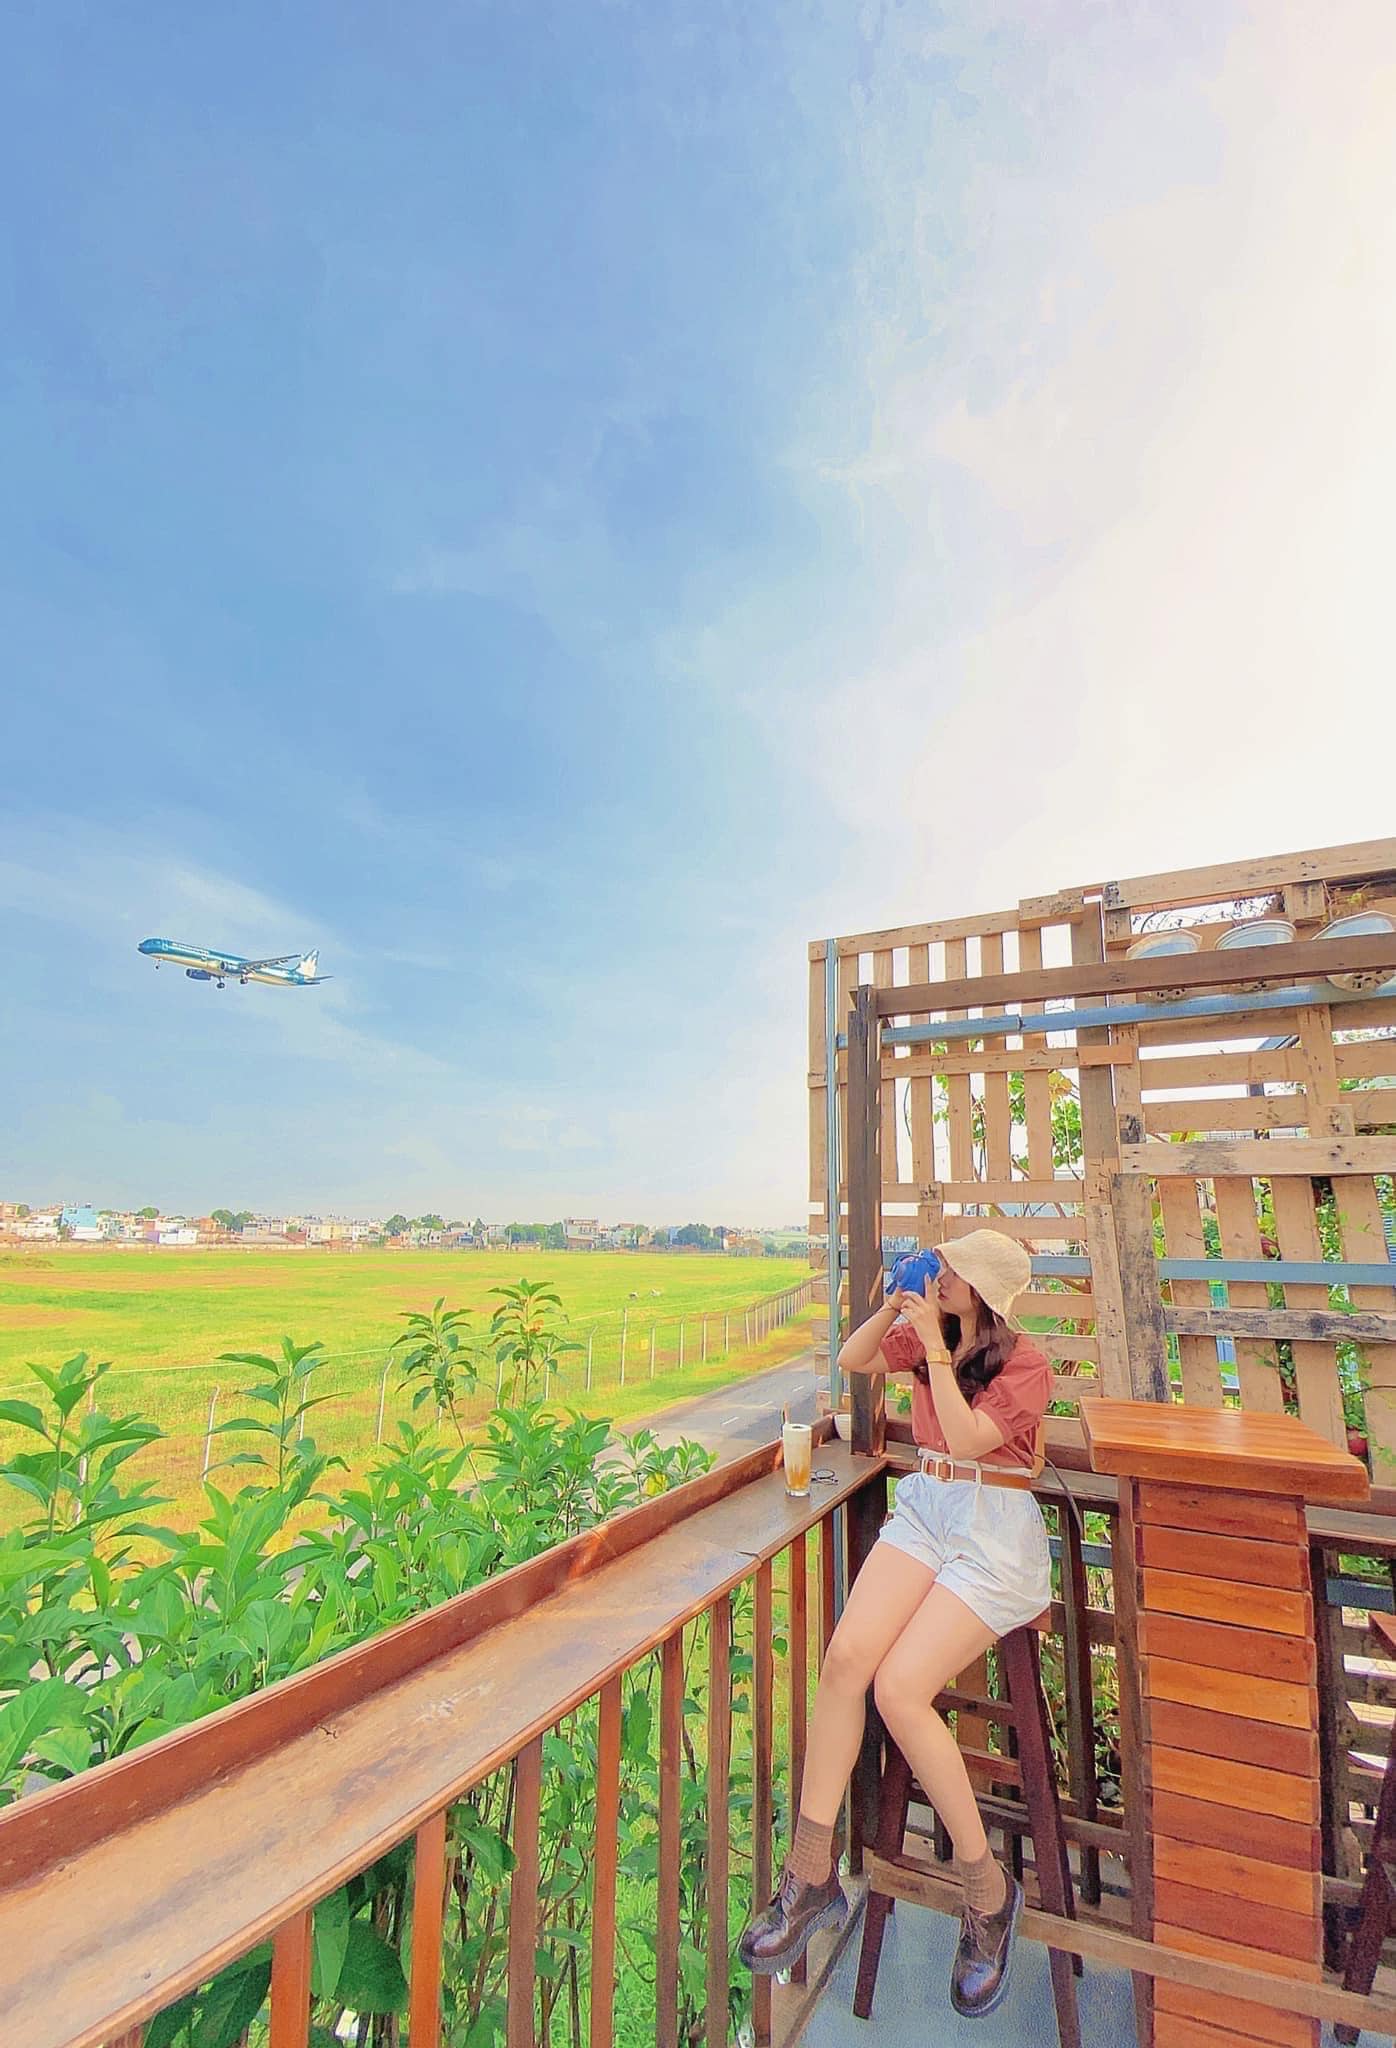 Thời điểm lý tưởng để ngắm máy bay là lúc hoàng hôn, cùng hướng các chuyến bay hạ cánh xuống sân bay Tân Sơn Nhất. (Nguồn ảnh: Internet)